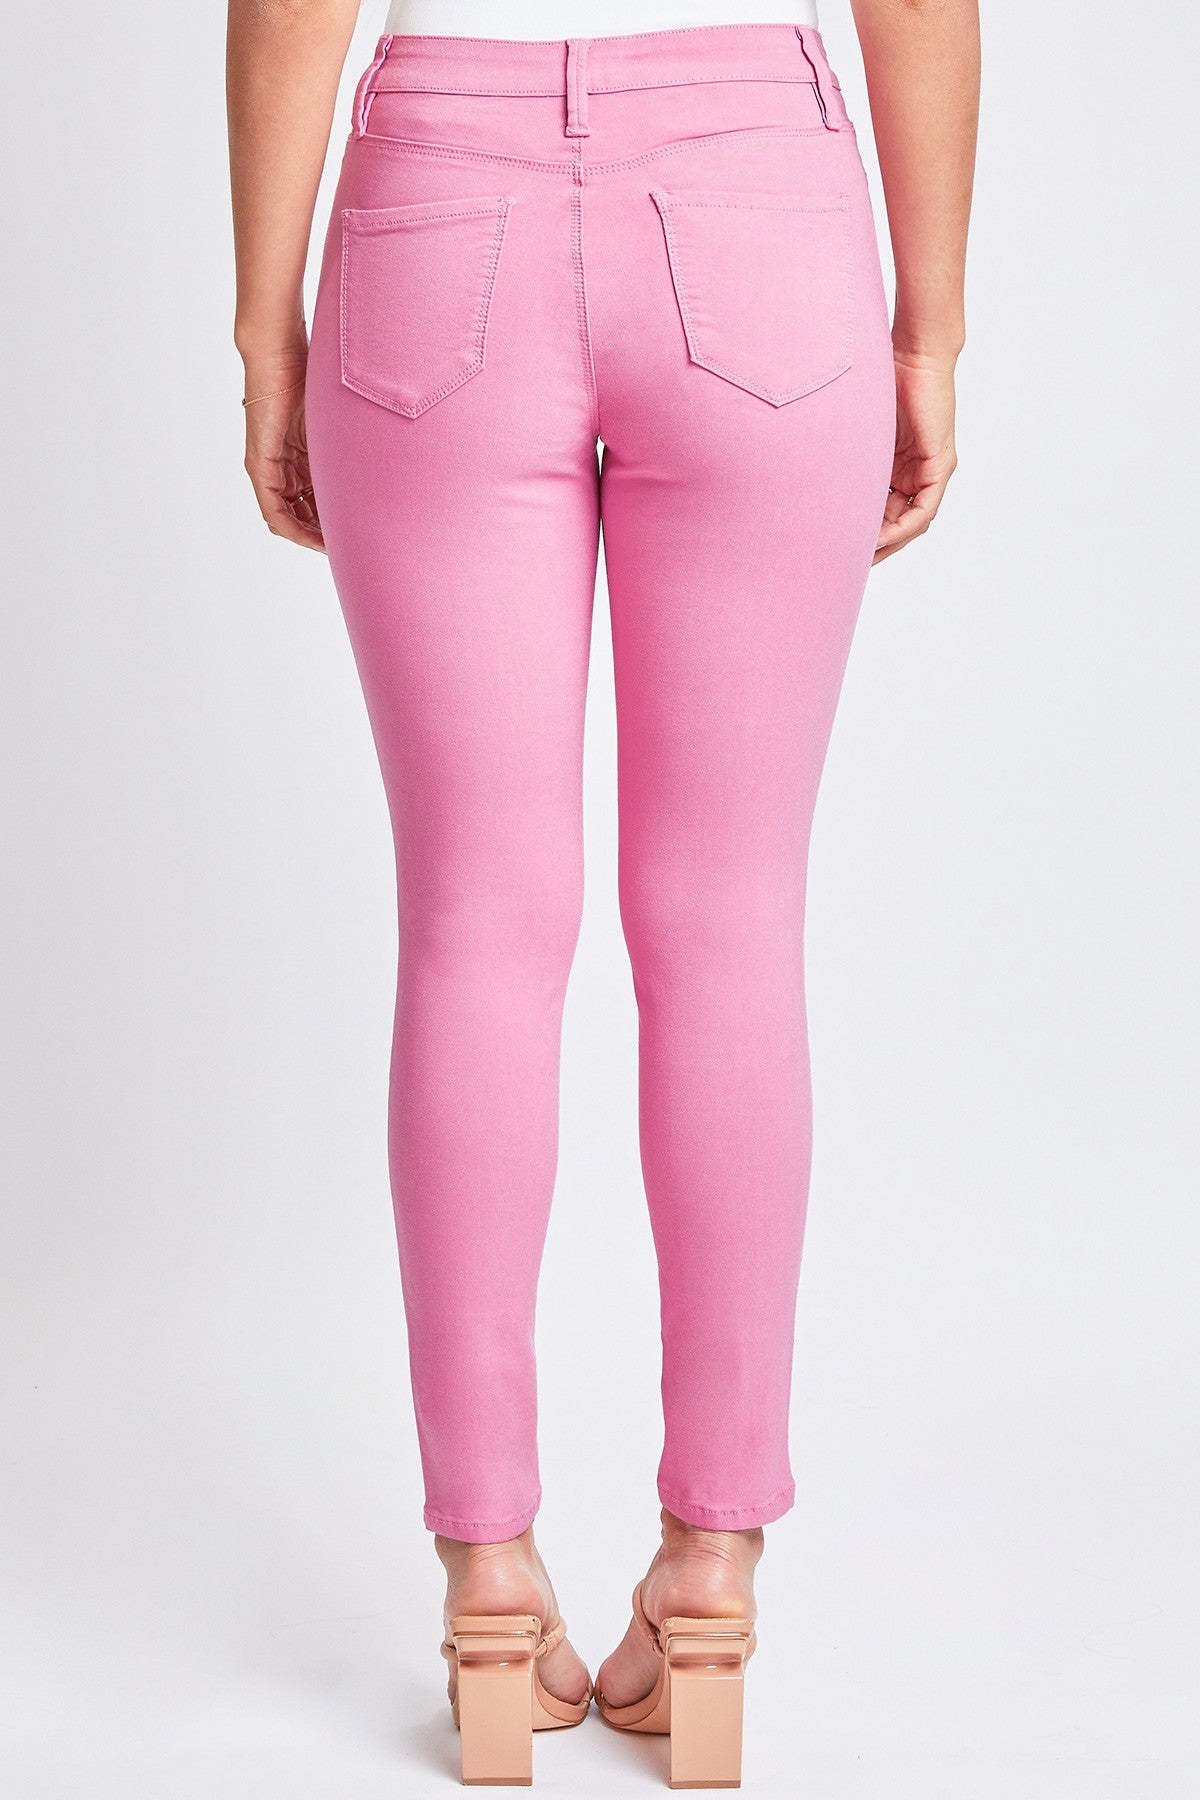 Flamingo YMI Hyperstretch Jeans